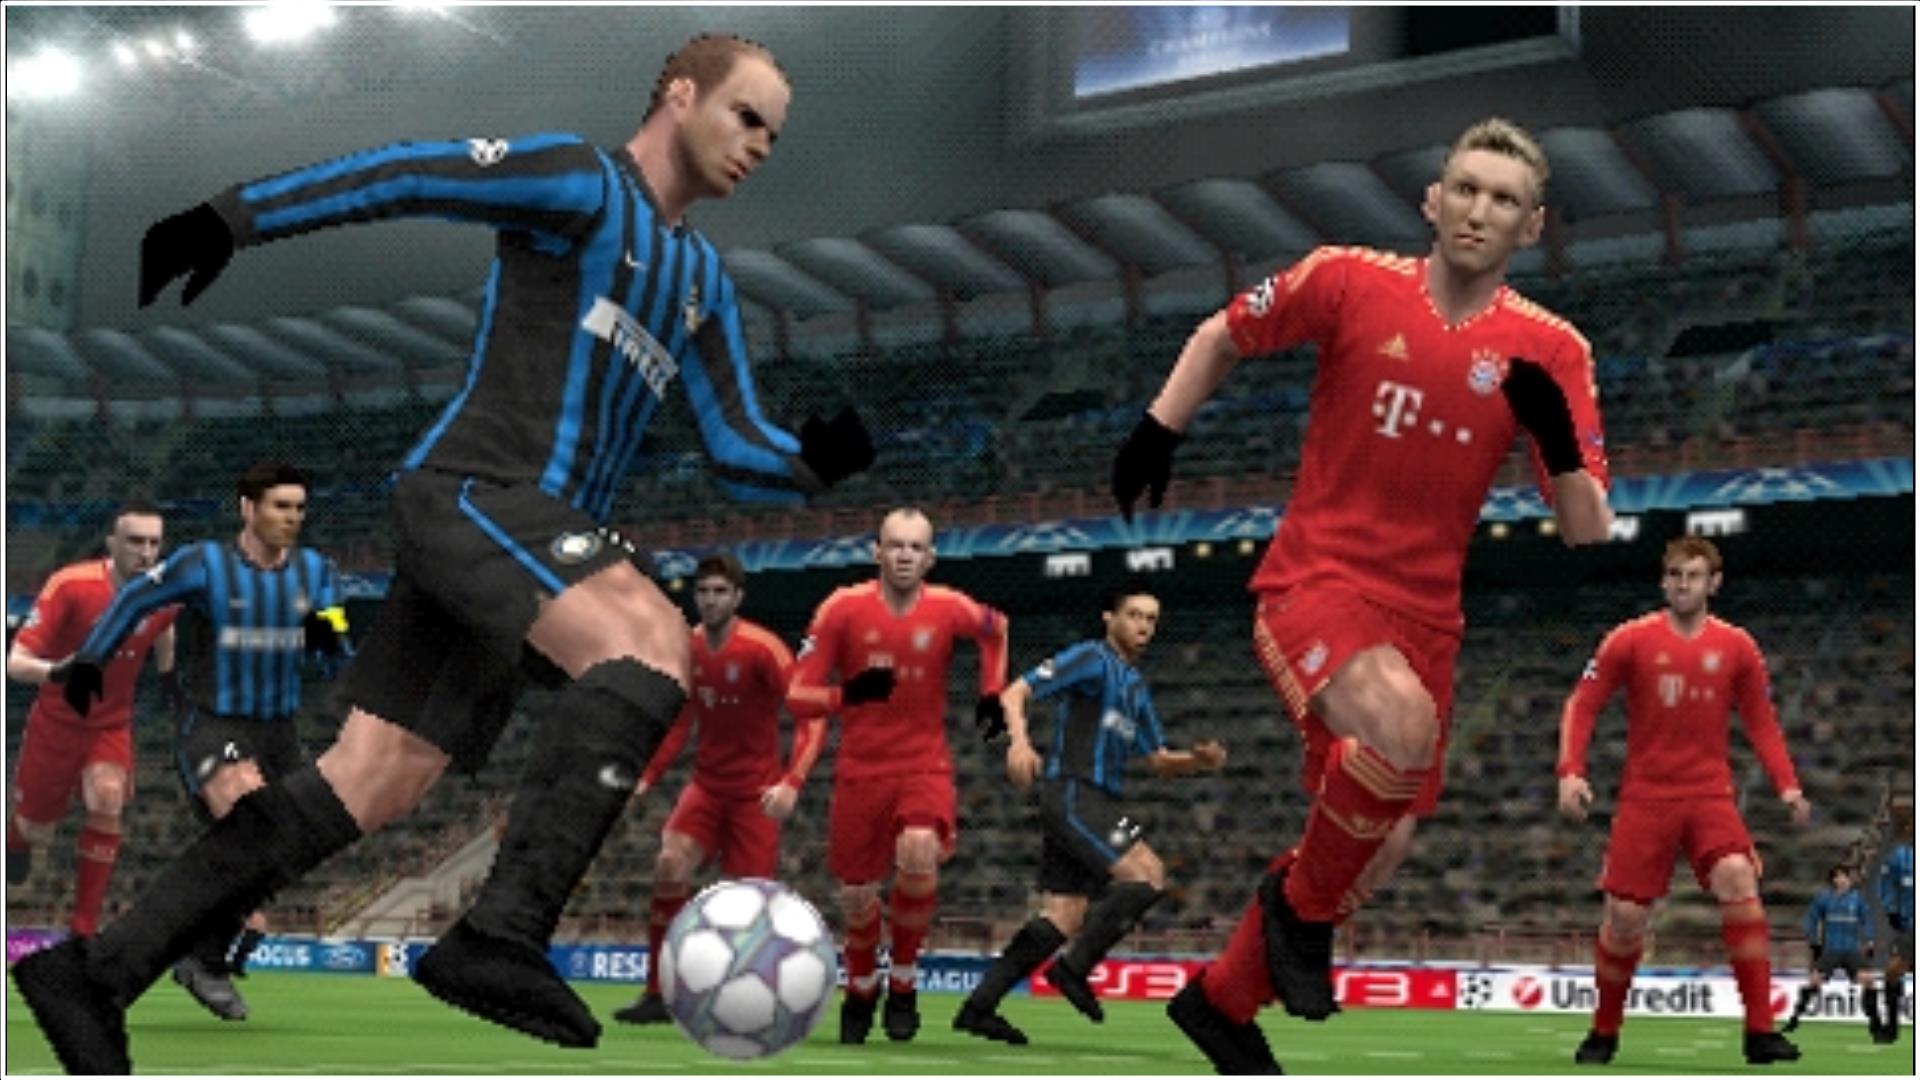 Pro Evolution Soccer 2012 ROM Download - Free PSP Games - Retrostic